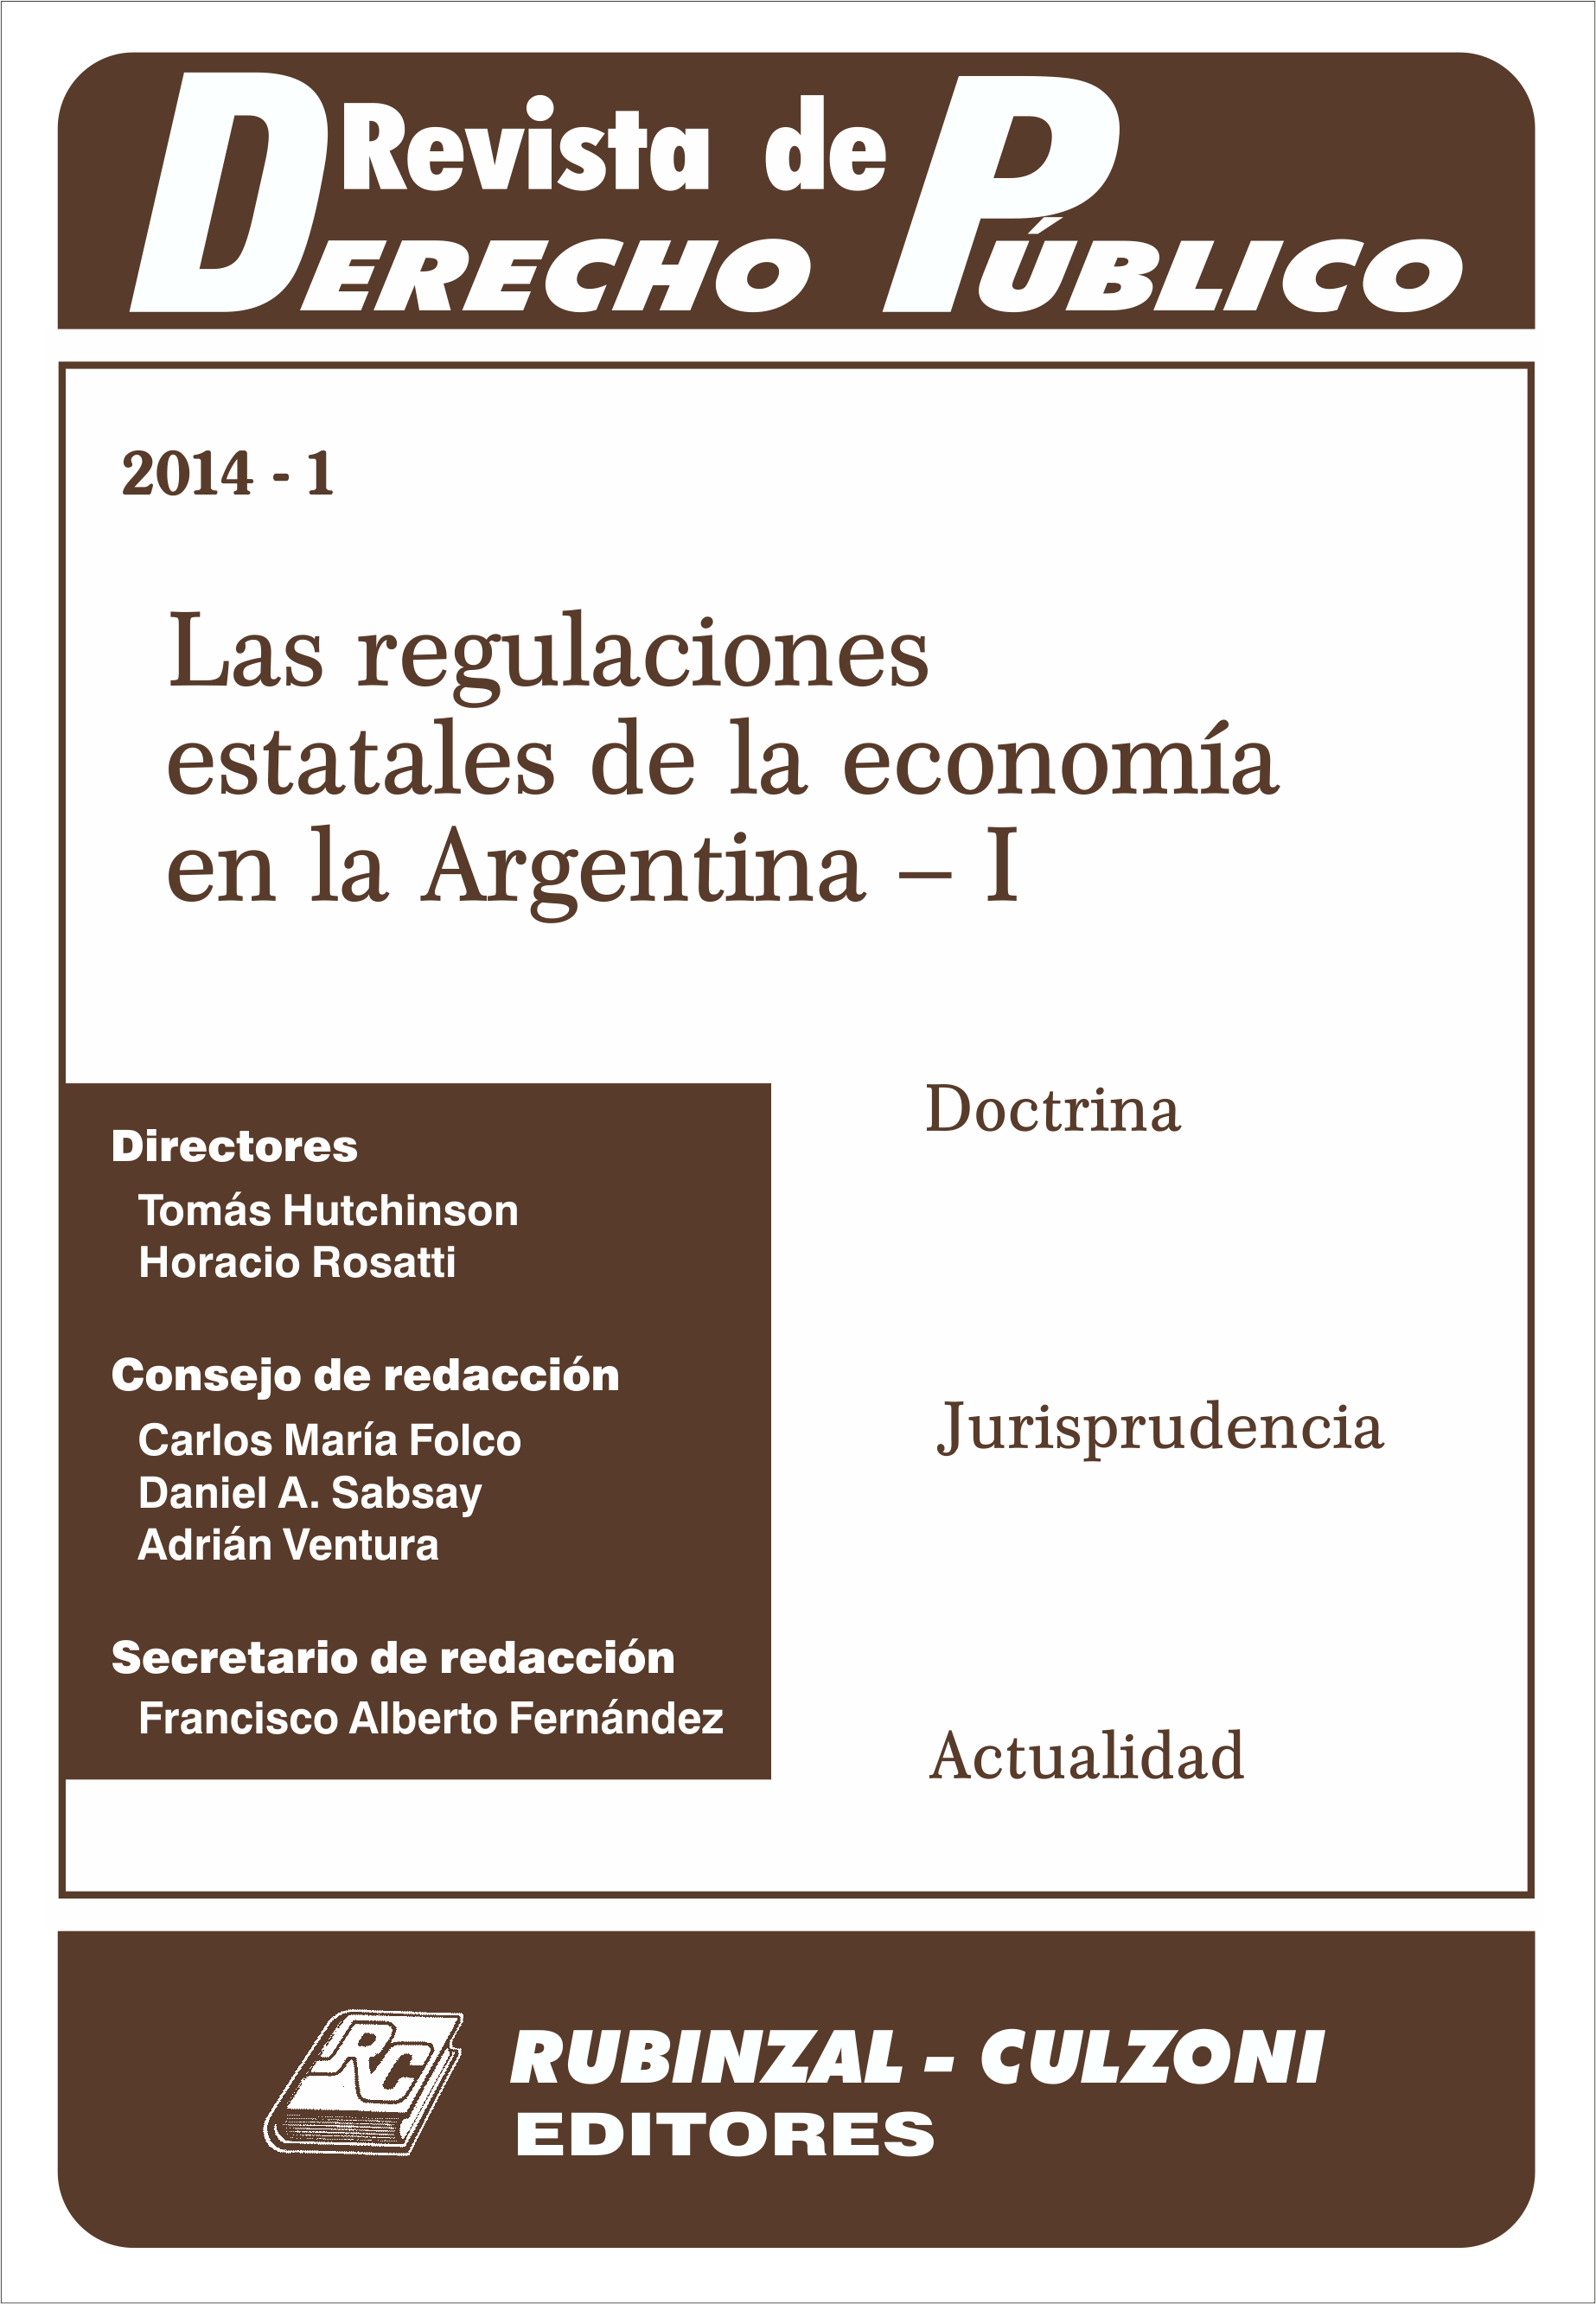 Revista de Derecho Público - Las regulaciones estatales de la economía en la Argentina - I.